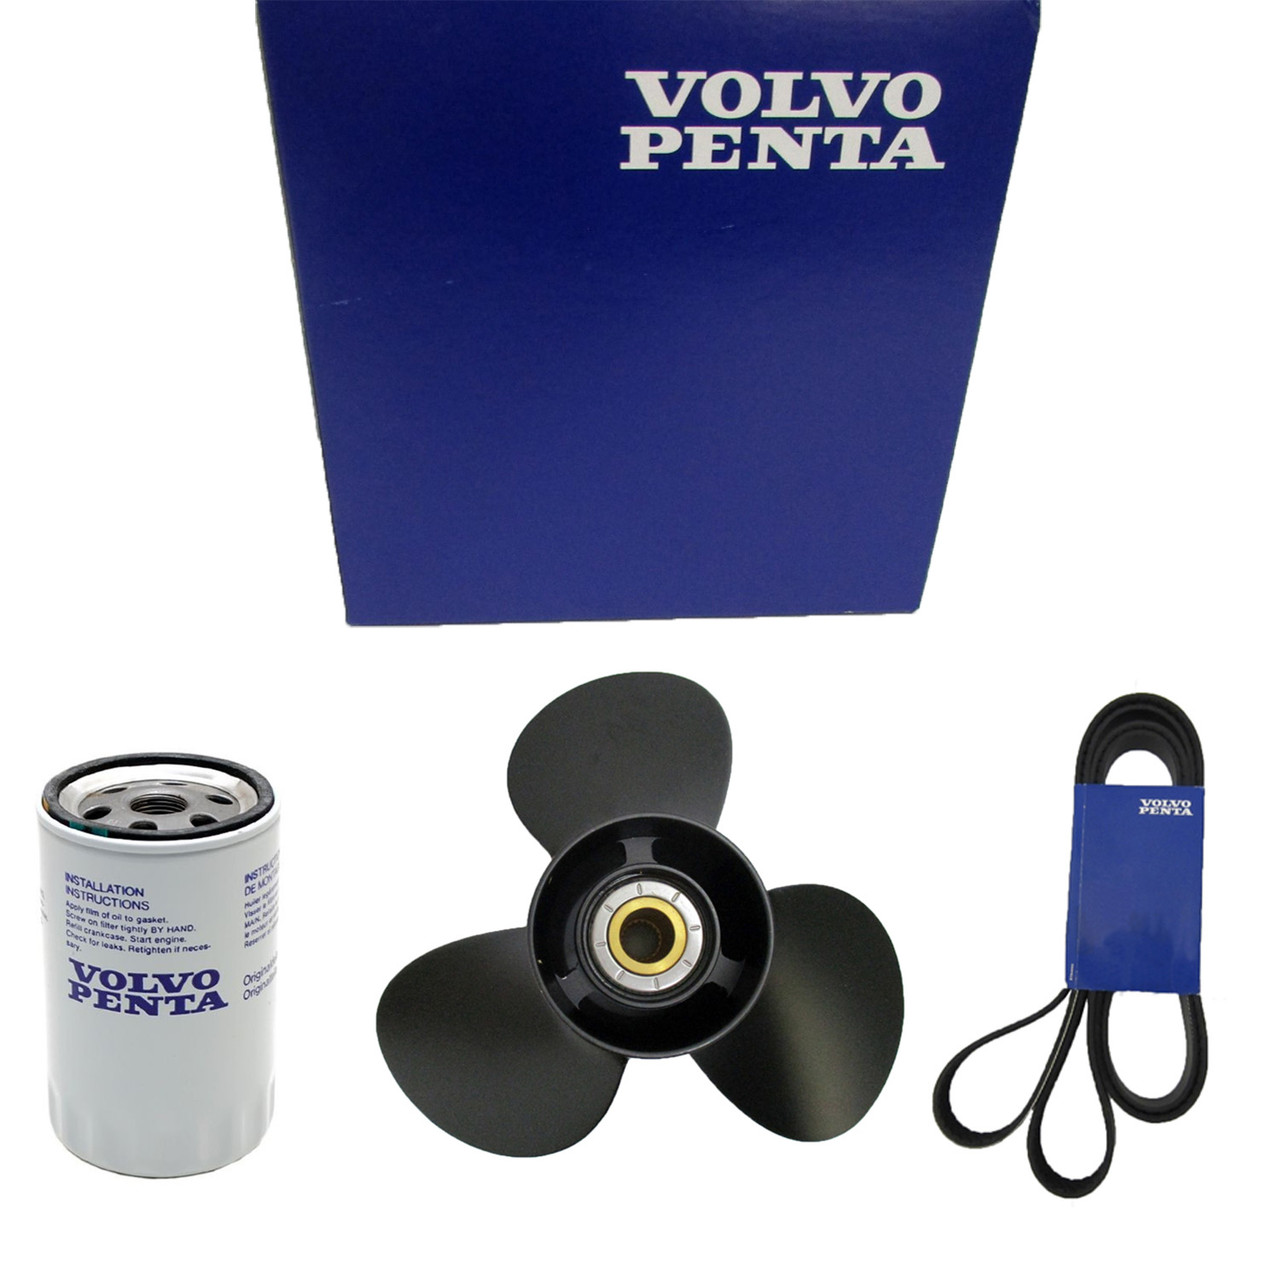 Volvo Penta New OEM Oil Filter, 861999